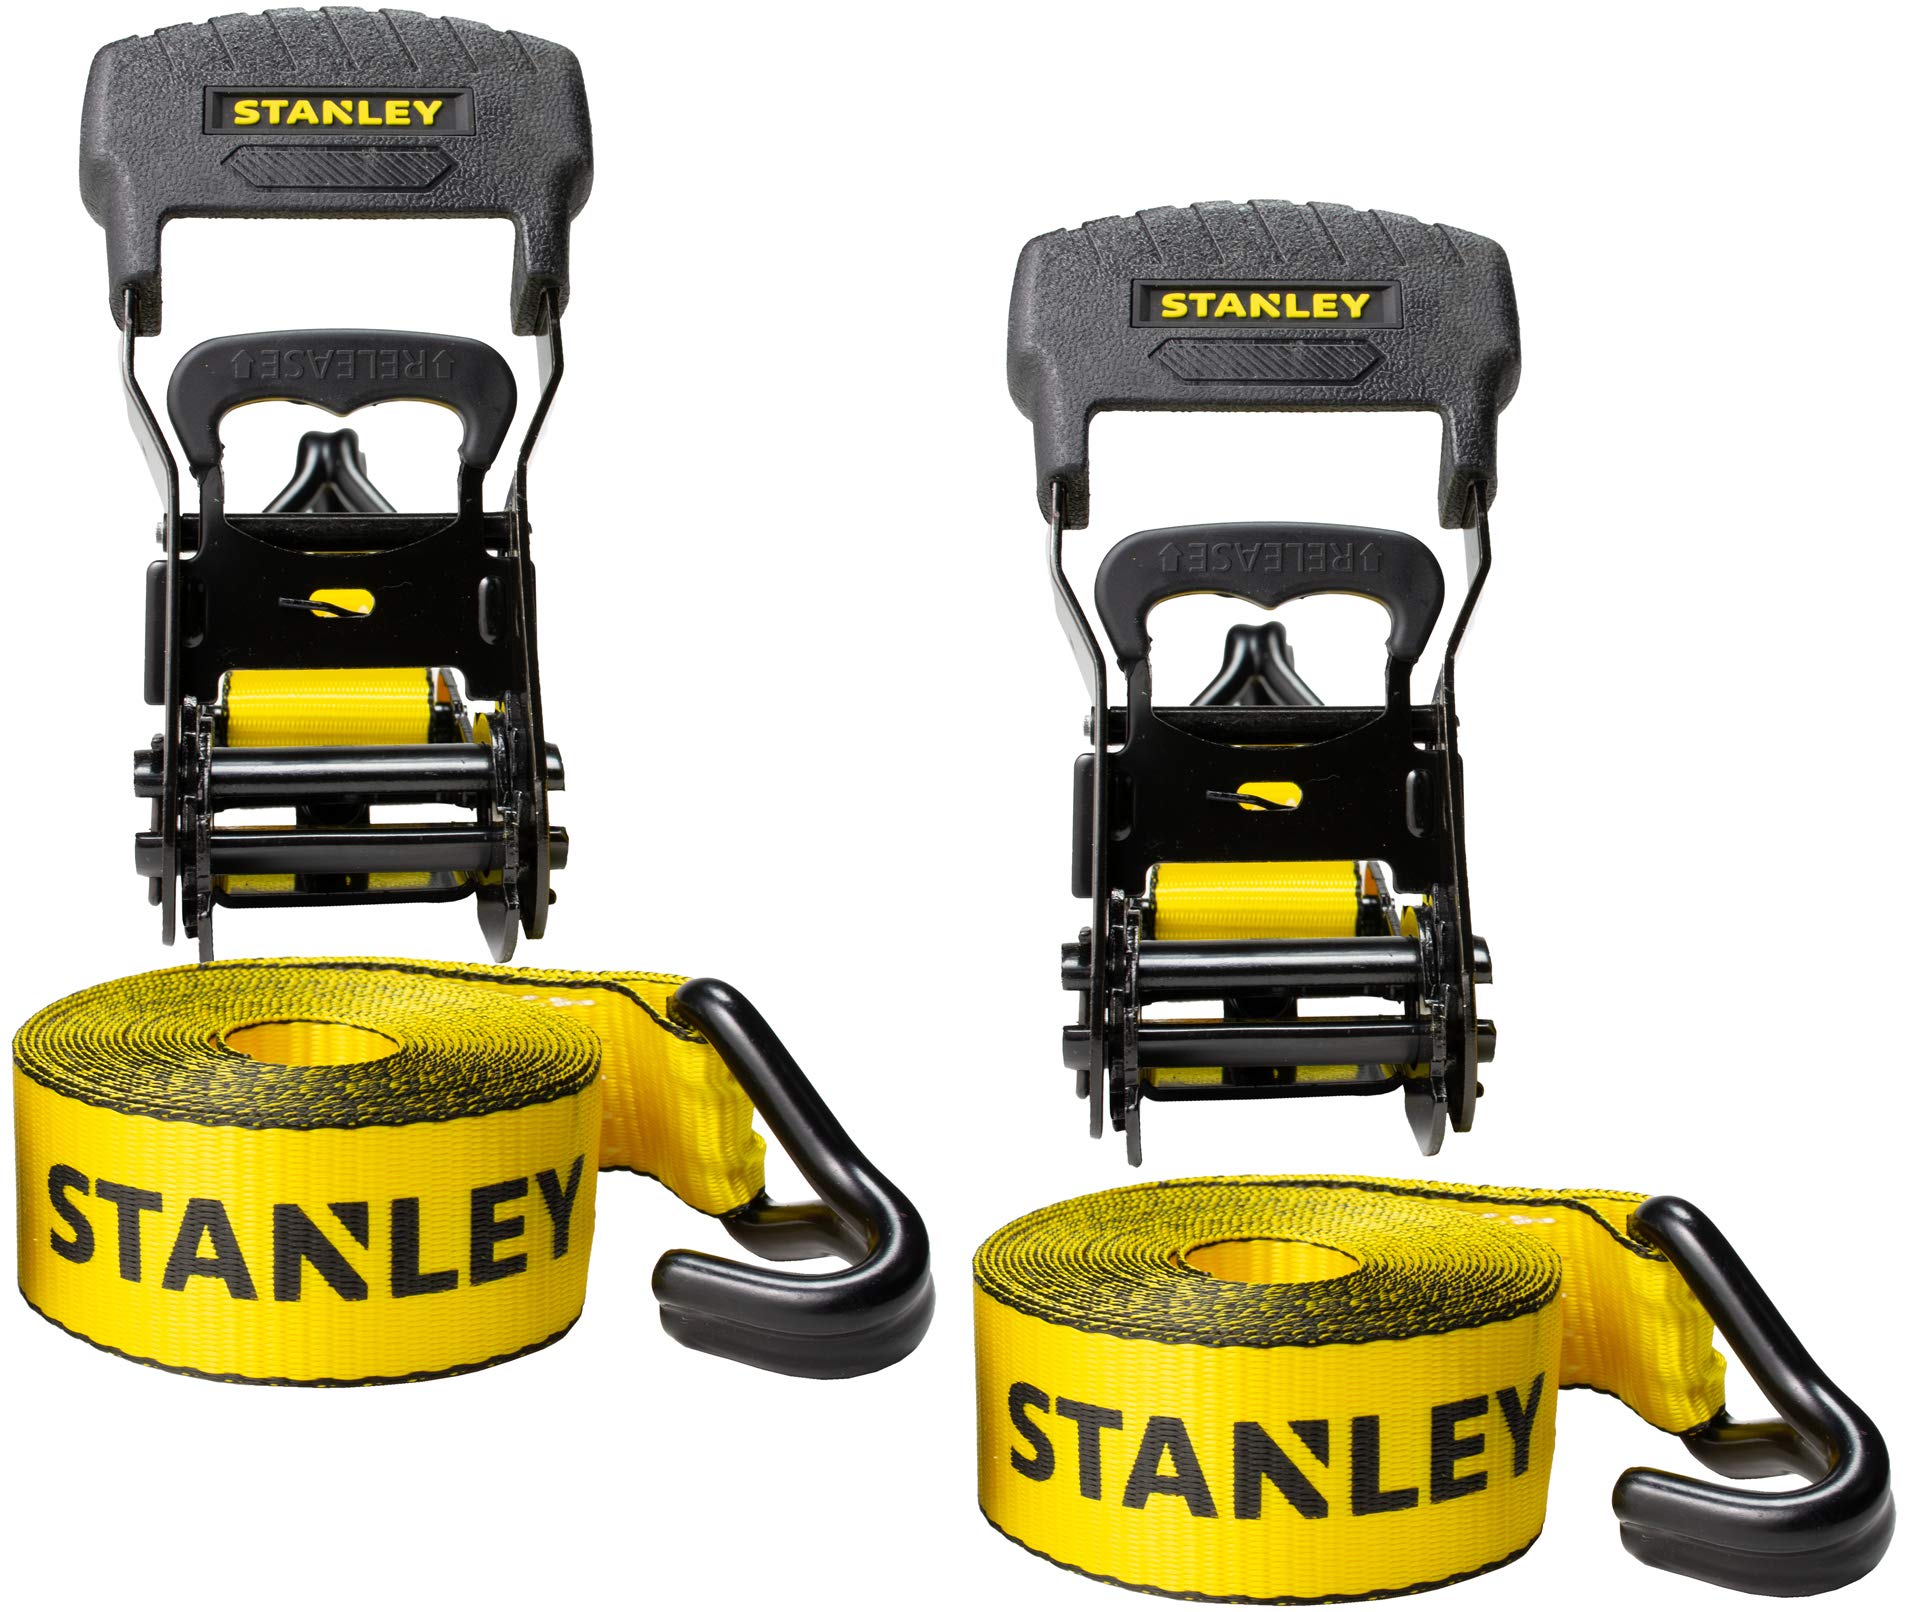 STANLEY S1007 Spanngurte mit Ratsche, 3,8 x 4,6 m, Schwarz/Gelb, schwere Ladungssicherung (1,5 kg Bruchfestigkeit), 2 Stück von Stanley